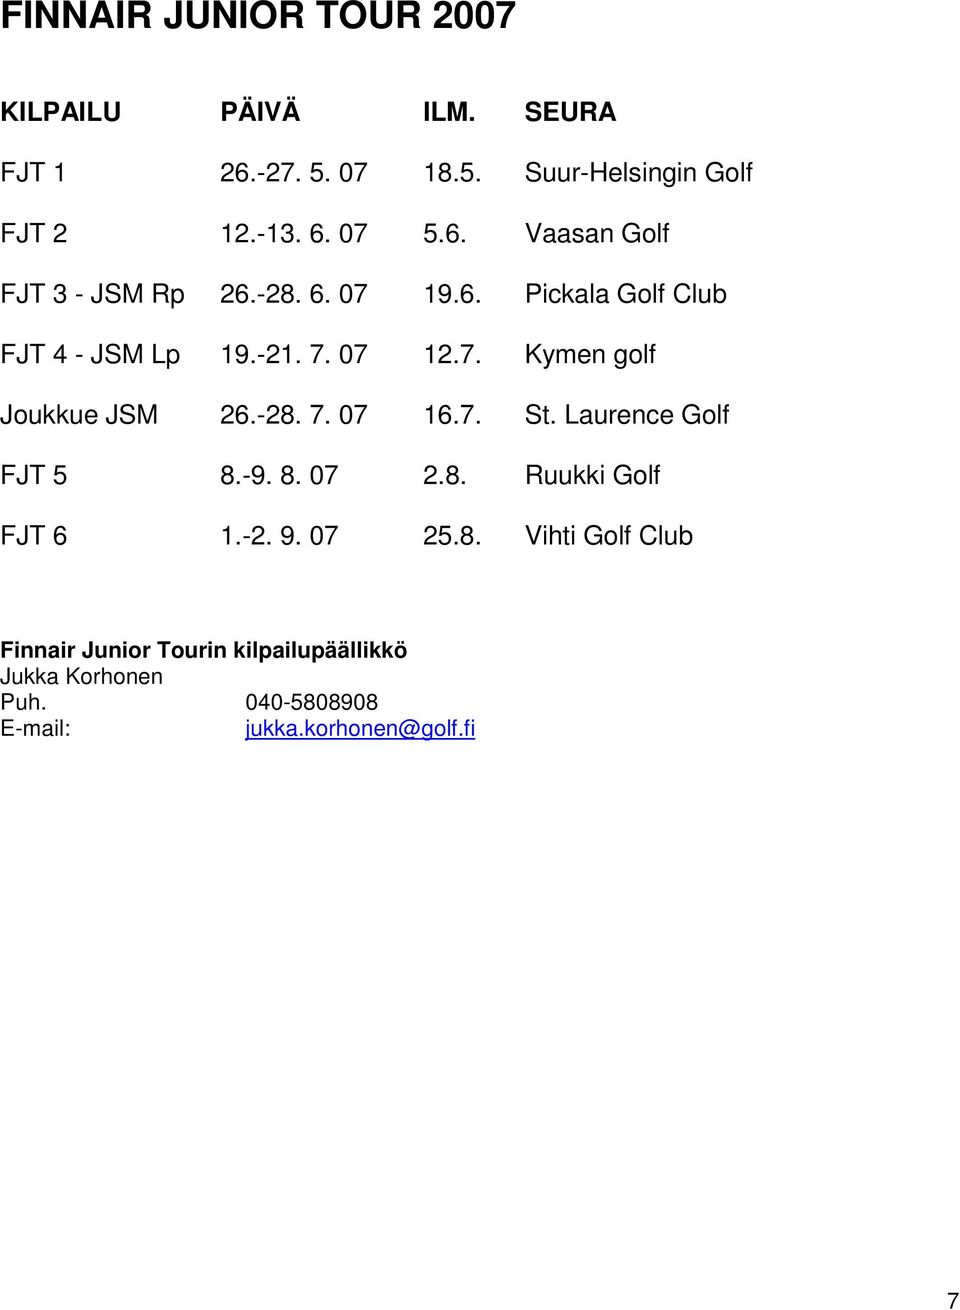 -28. 7. 07 16.7. St. Laurence Golf FJT 5 8.-9. 8. 07 2.8. Ruukki Golf FJT 6 1.-2. 9. 07 25.8. Vihti Golf Club Finnair Junior Tourin kilpailupäällikkö Jukka Korhonen Puh.